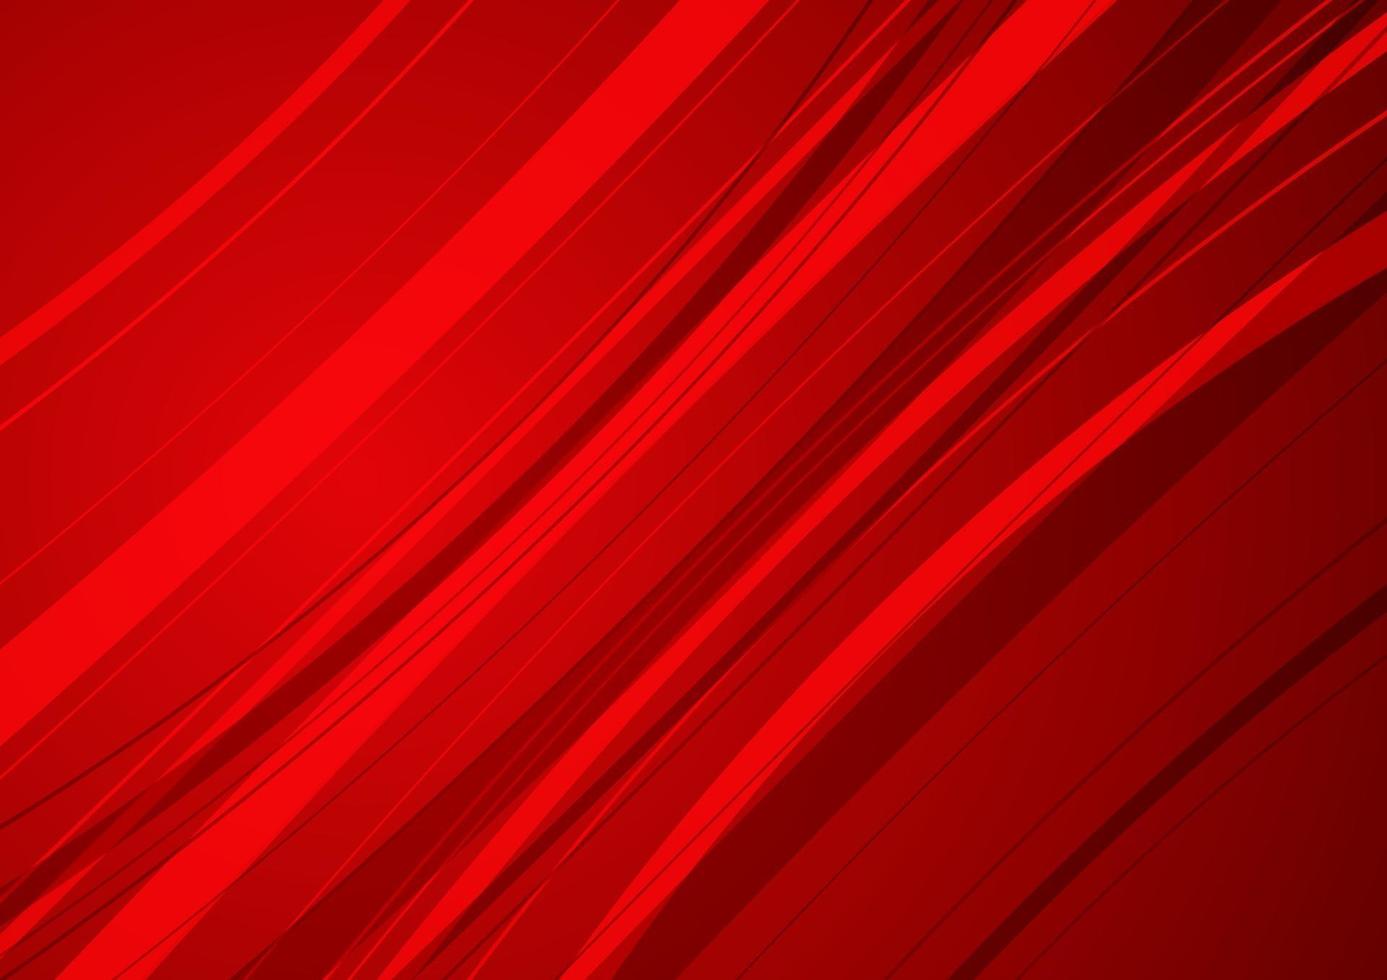 fundo vermelho abstrato com curva vermelha. vetor